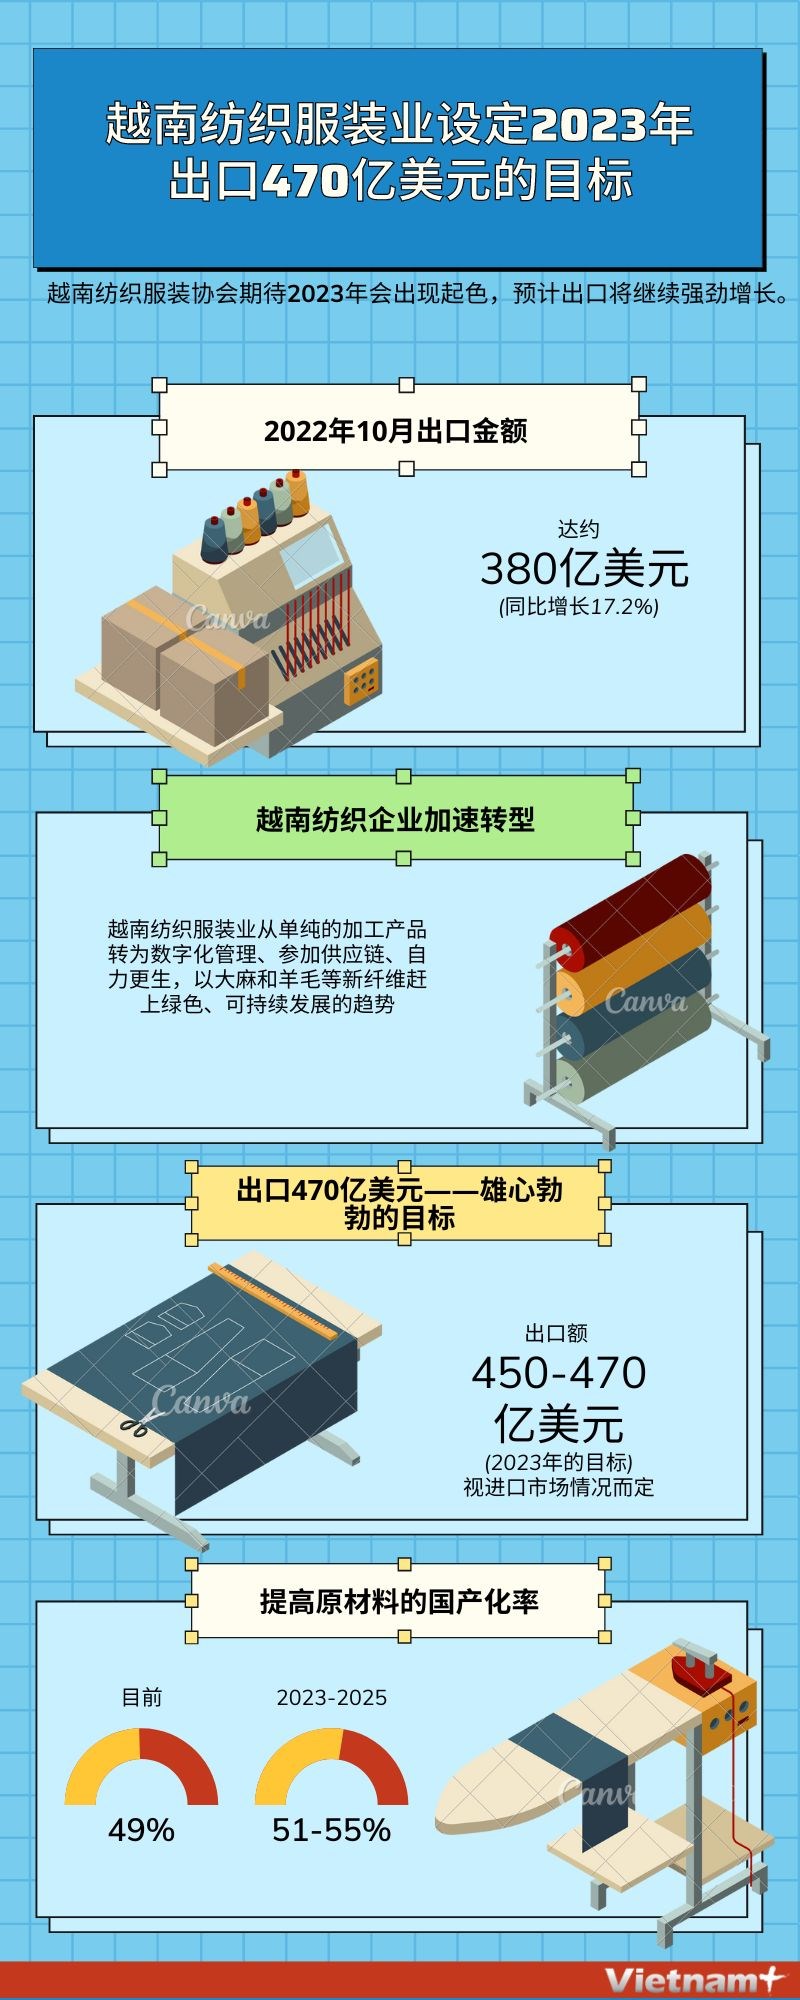 图表新闻：越南纺织服装业设定2023年出口470亿美元的目标 hinh anh 1